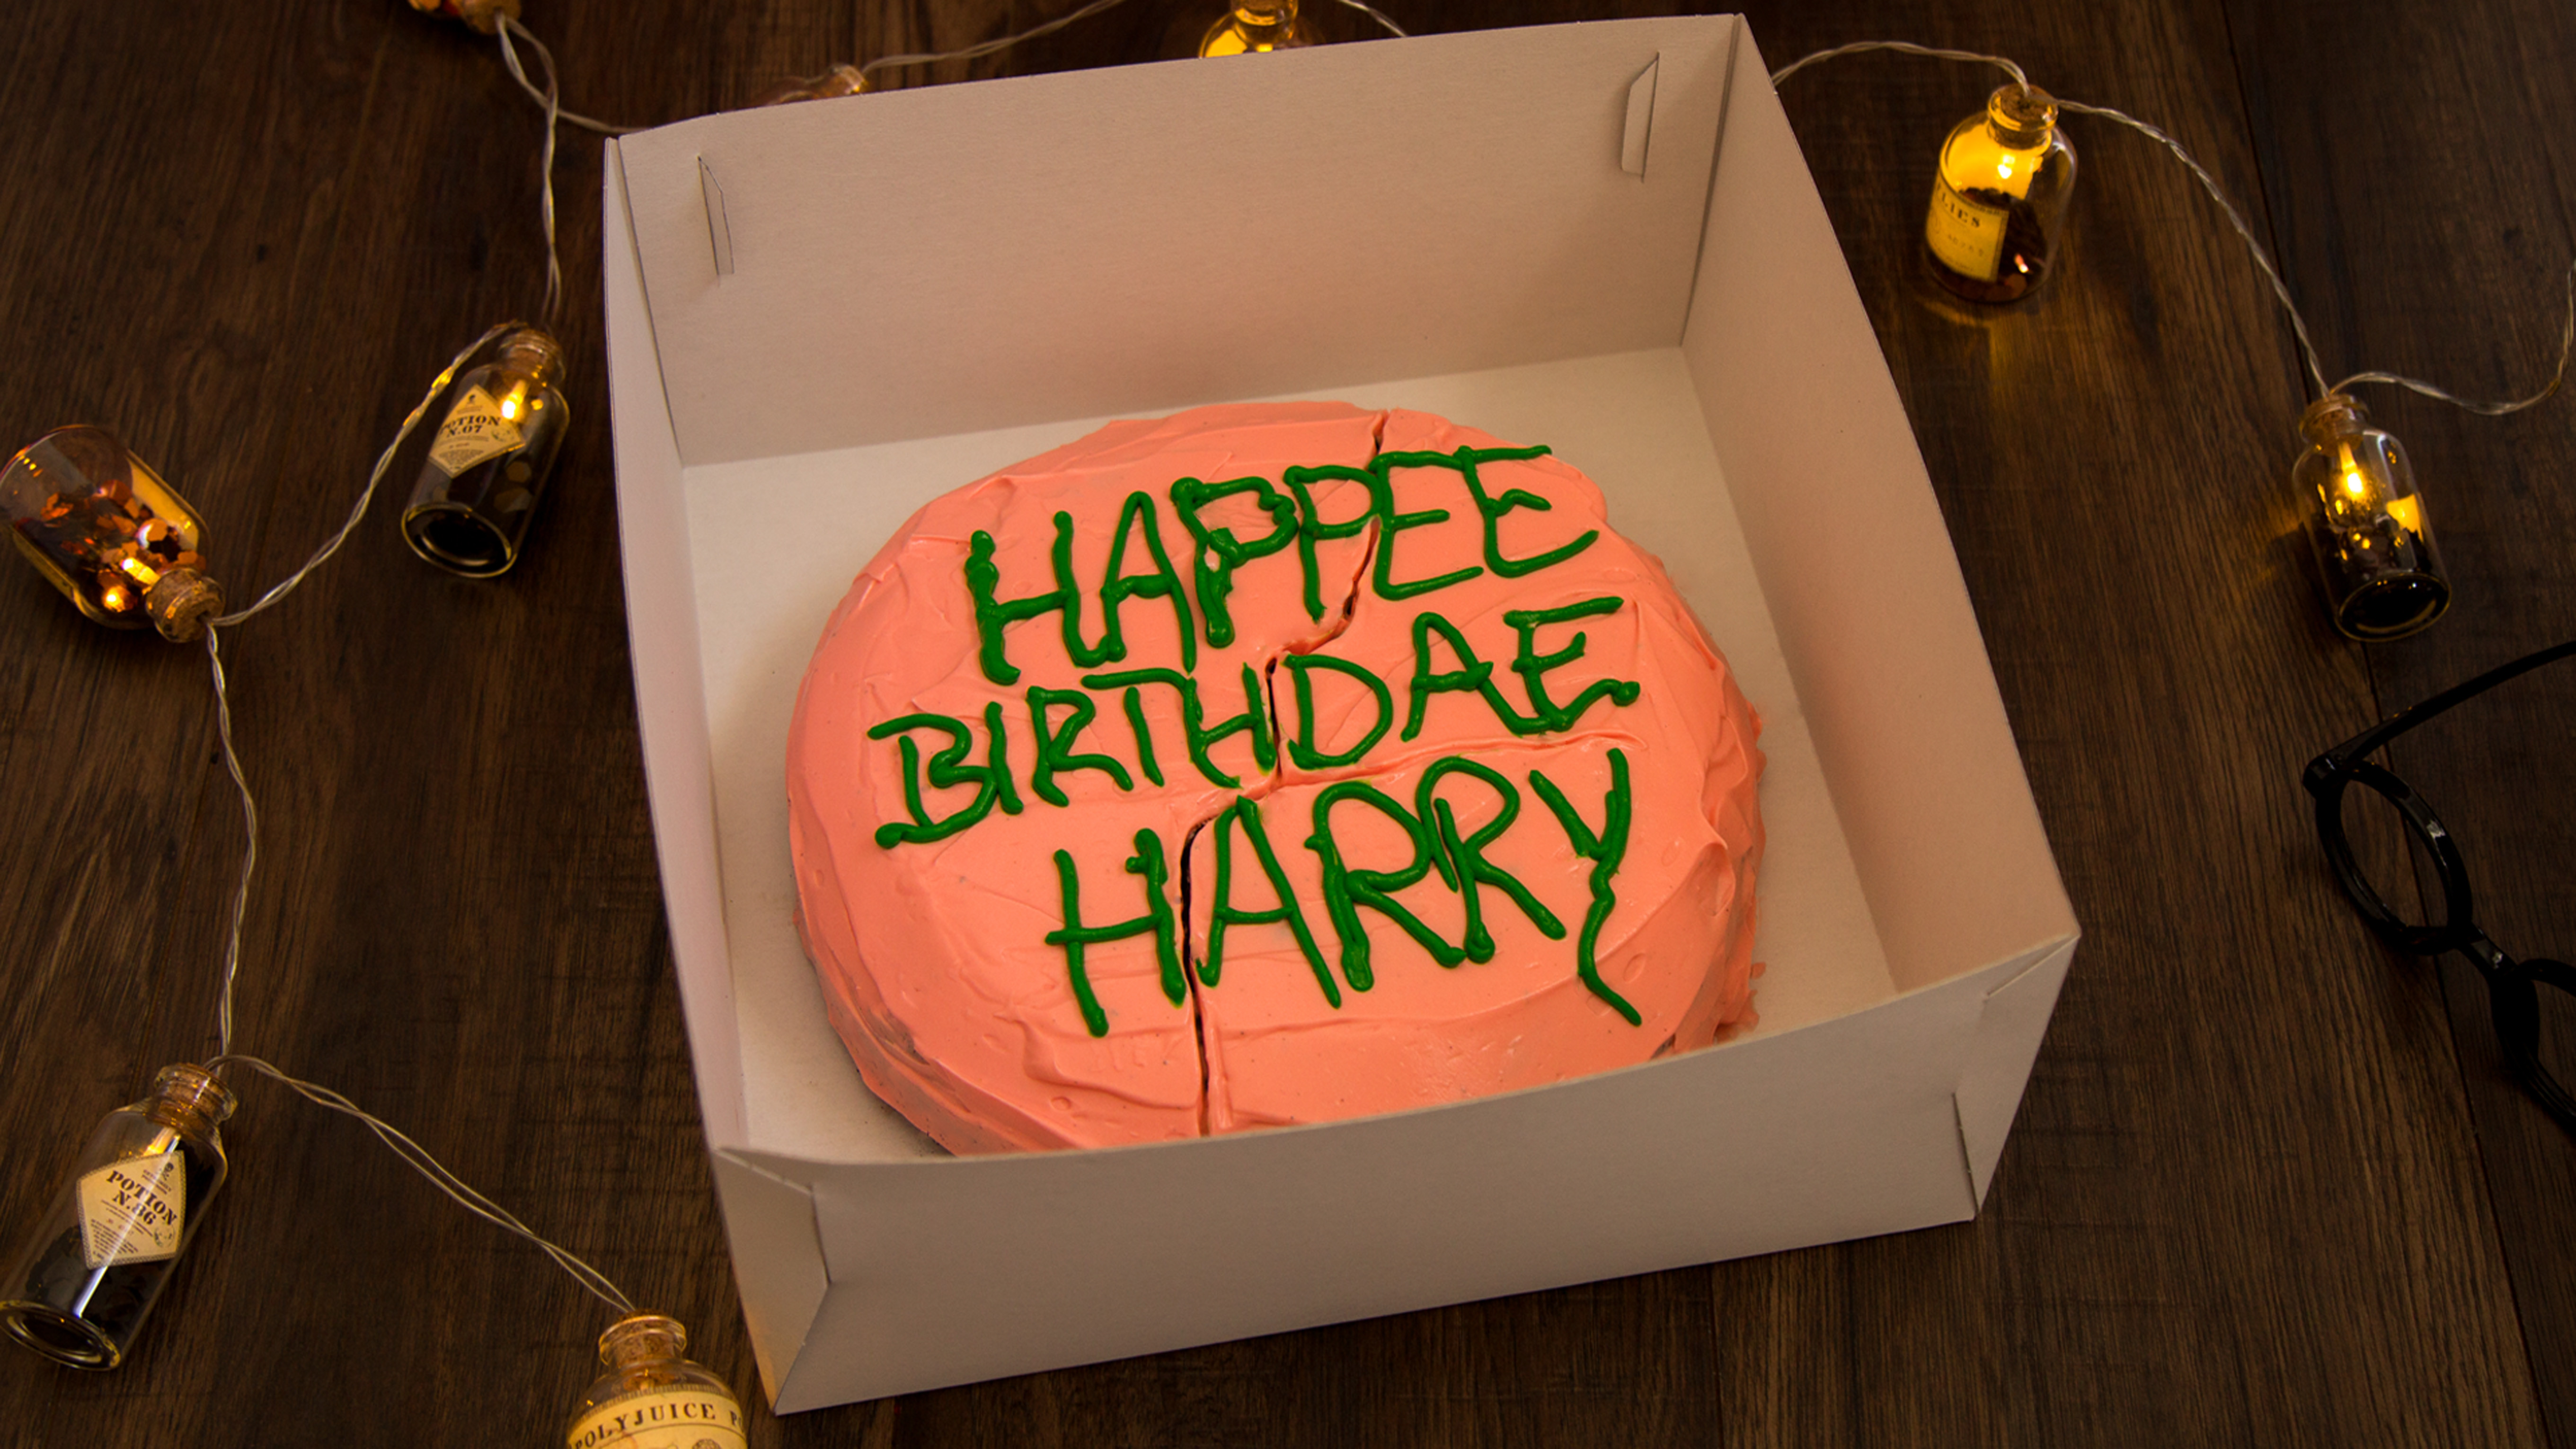 Harry Potter Geburtstagstorte
 Harry Potter Fan Food Harrys Geburtstagskuchen